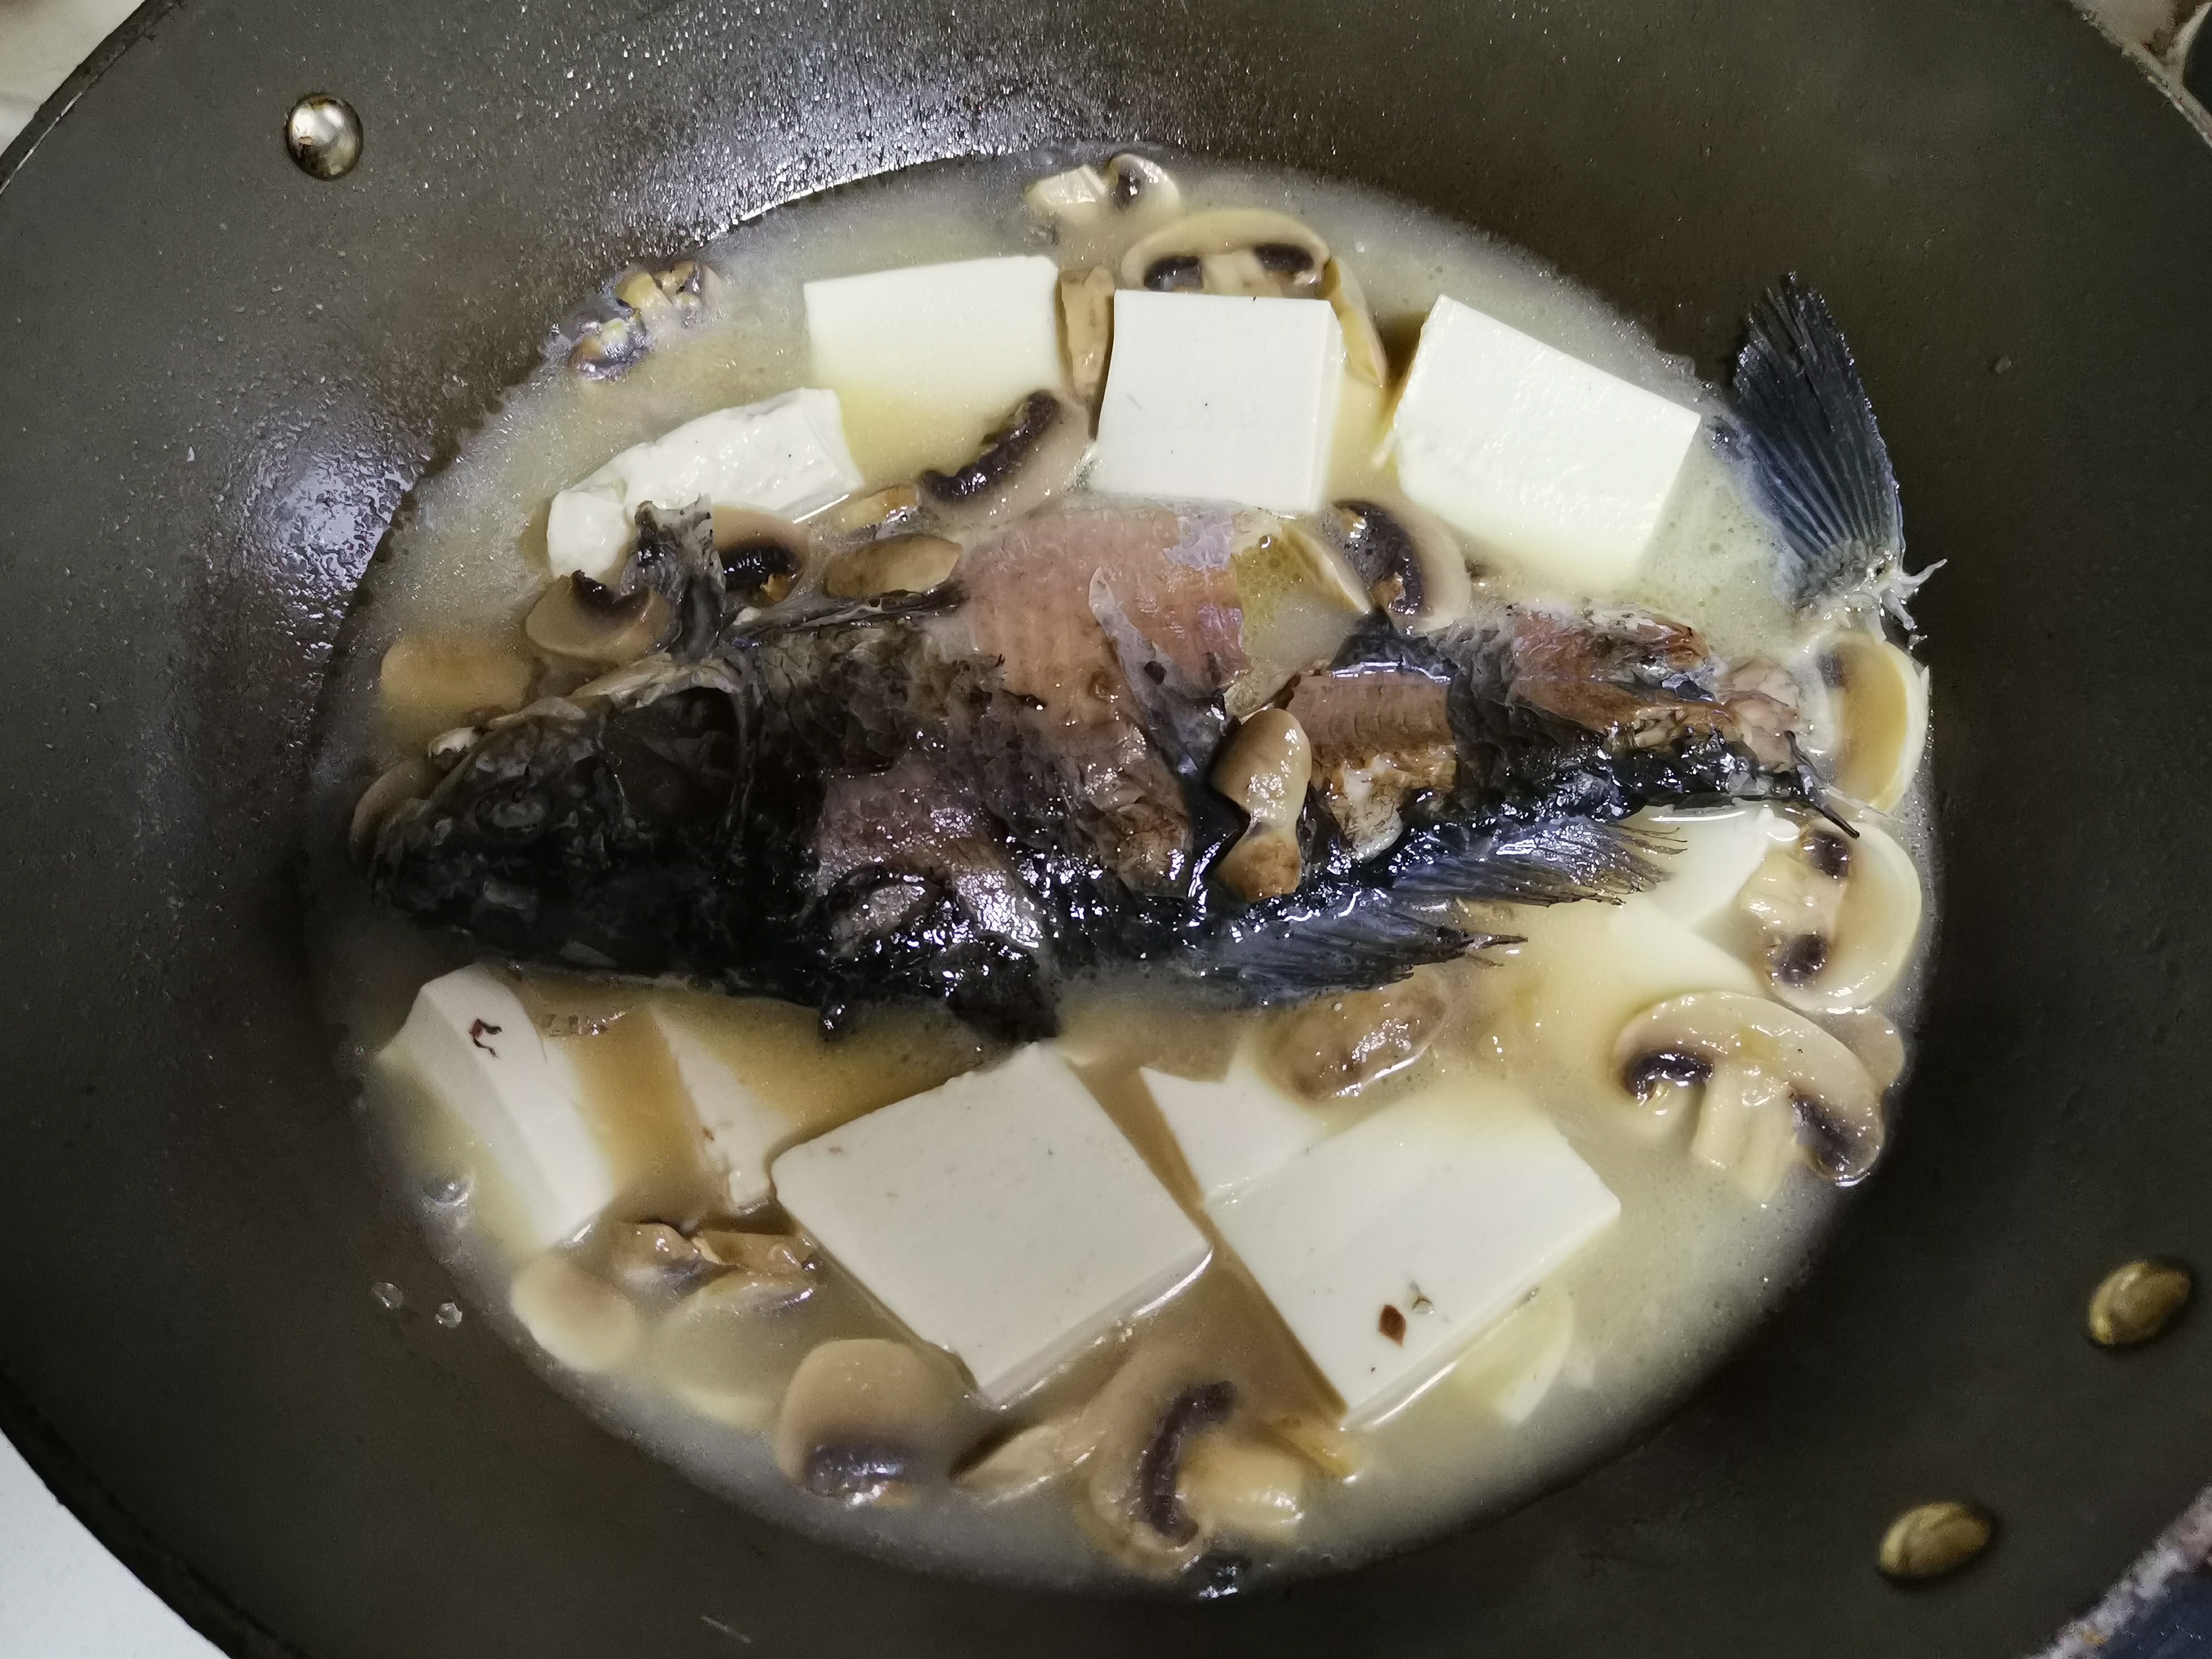 香菇鲫鱼豆腐汤,香菇鲫鱼豆腐汤的家常做法 - 美食杰香菇鲫鱼豆腐汤做法大全